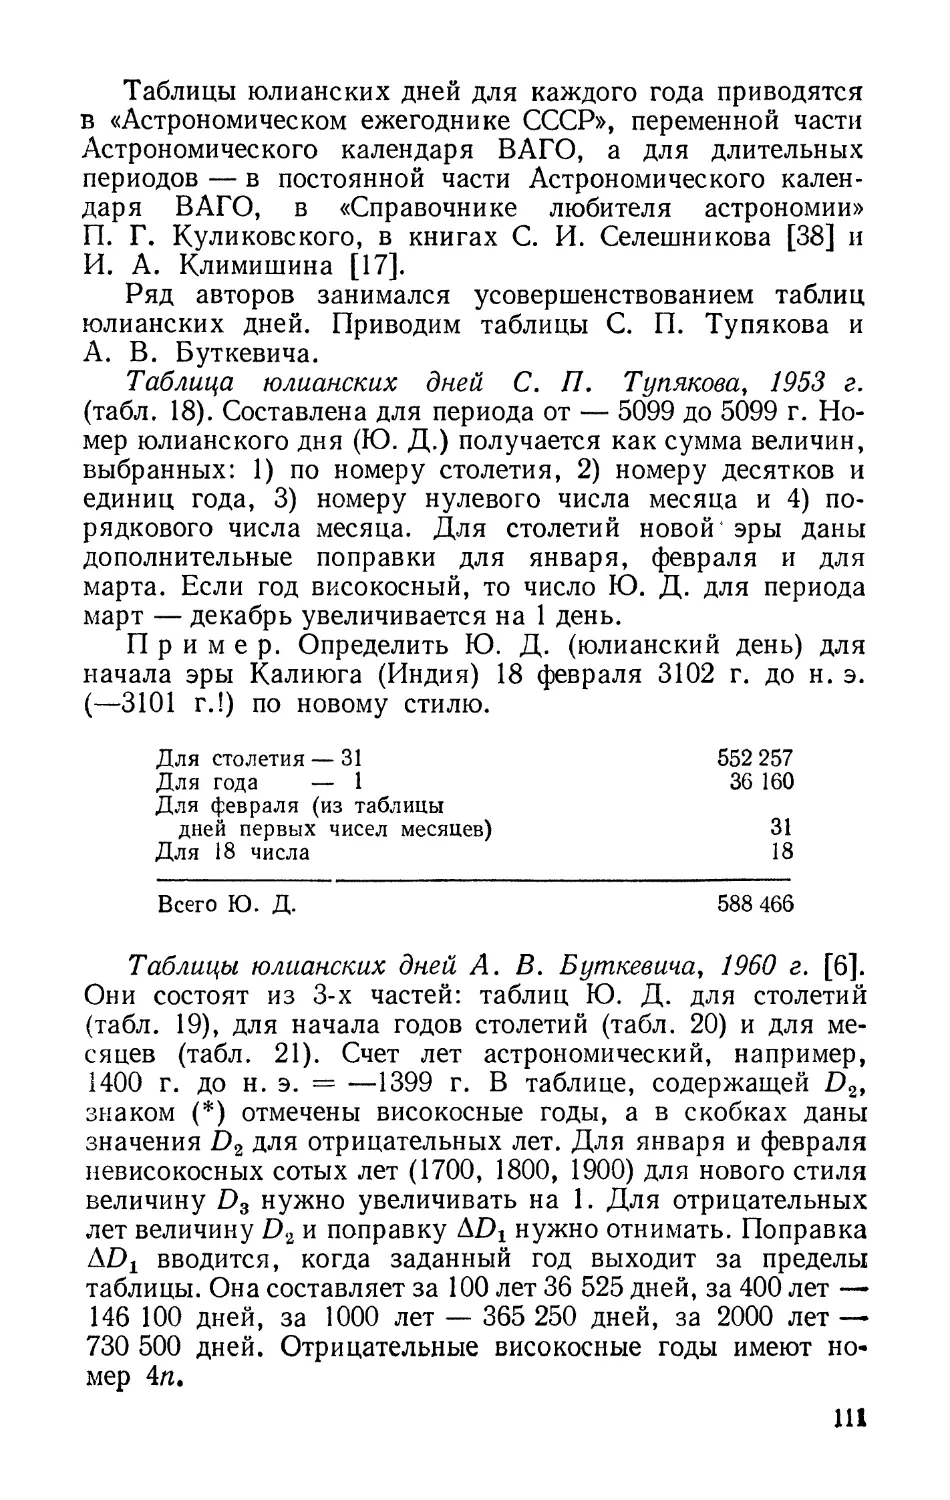 Таблица юлианских дней С. П. Тупякова, 1953 г.
Таблицы юлианских дней А. В. Буткевича, 1960 г.